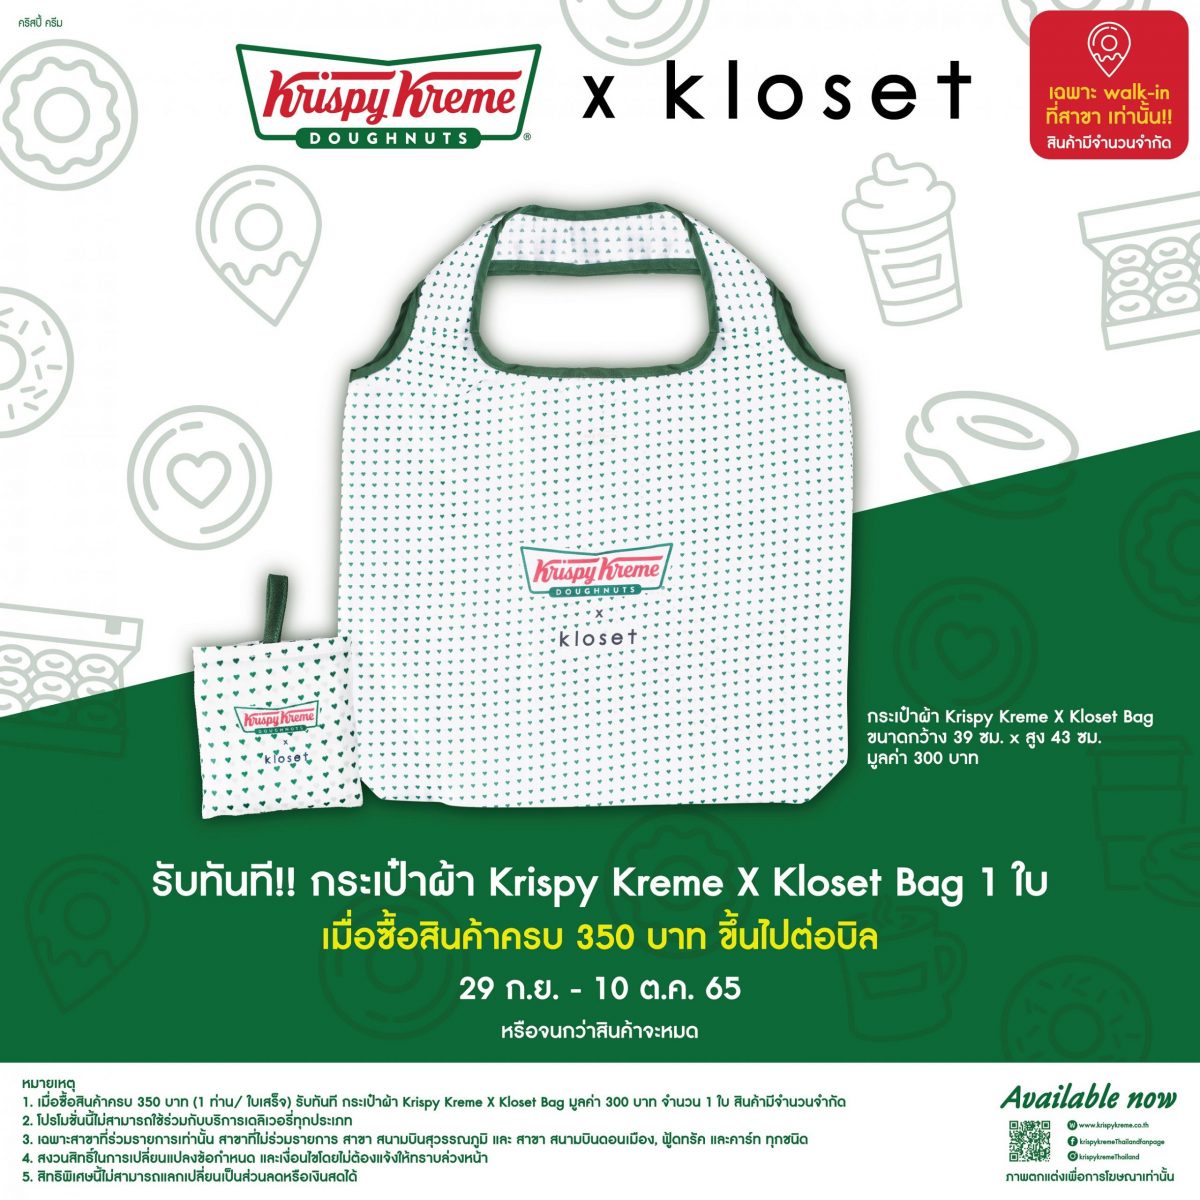 ของมันต้องมี!! Krispy Kreme x Kloset Bag กระเป๋าสุดฮอตกับการคอลแลปส์ครั้งยิ่งใหญ่ของสองแบรนด์ดัง